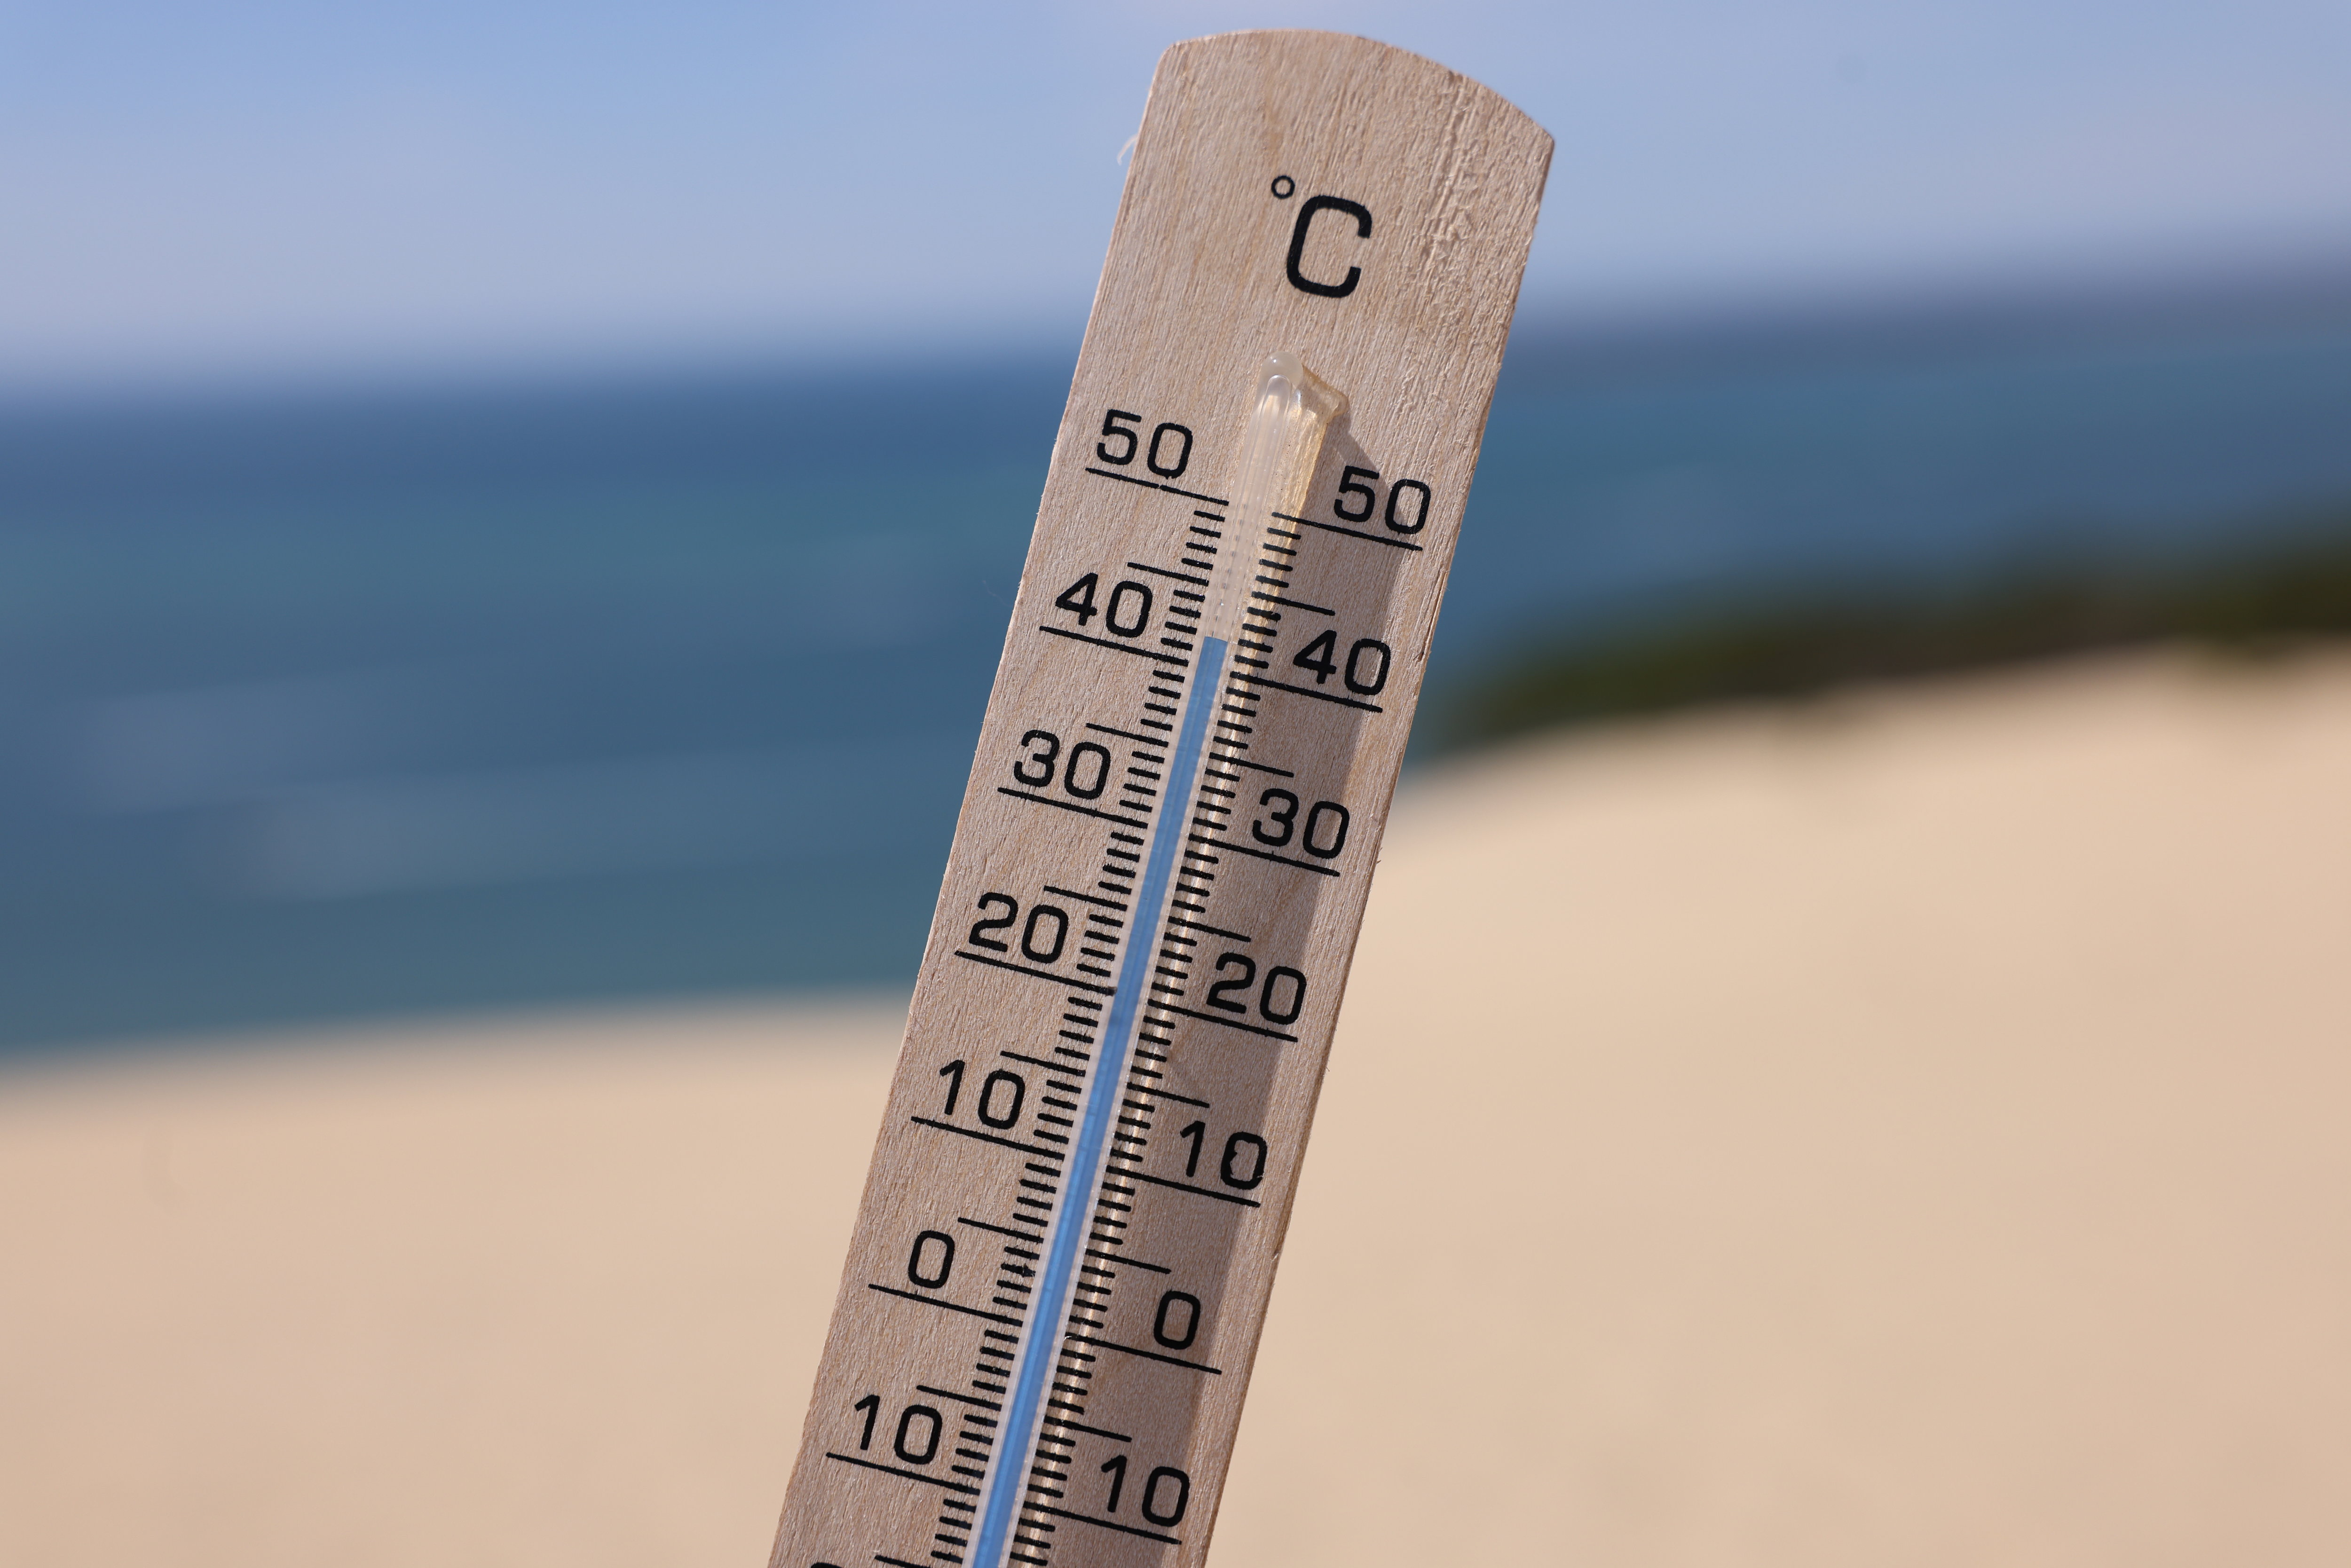 D'après les premières tendances publiées par Météo France, les températures pourraient être supérieures à la normale entre mai et juillet. LP/Arnaud Journois